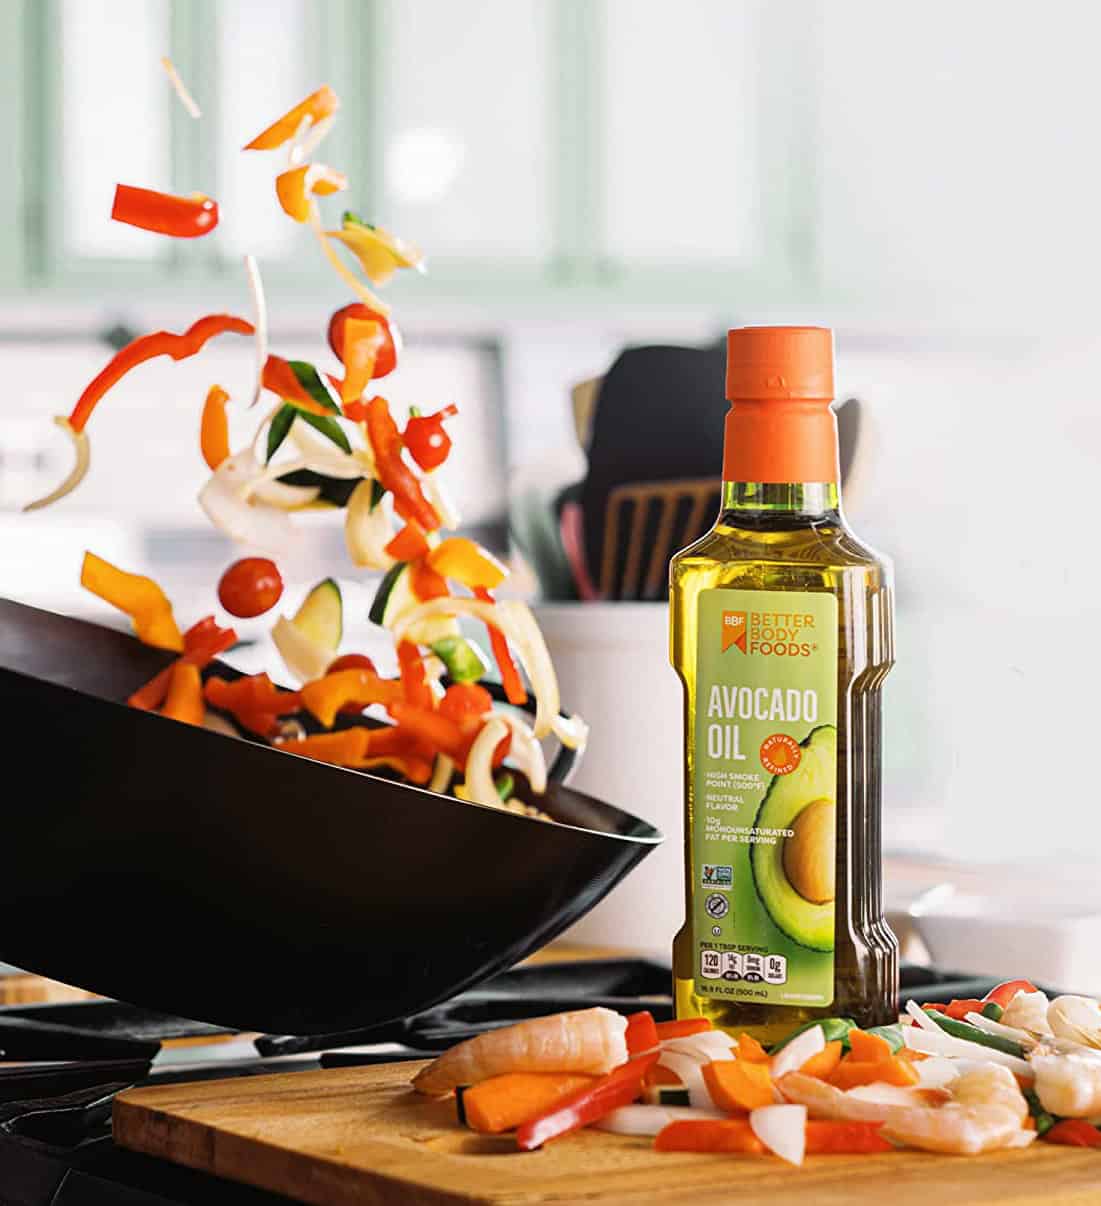 Utilice el aceite de aguacate de BetterBody Foods como sustituto del aceite de sésamo